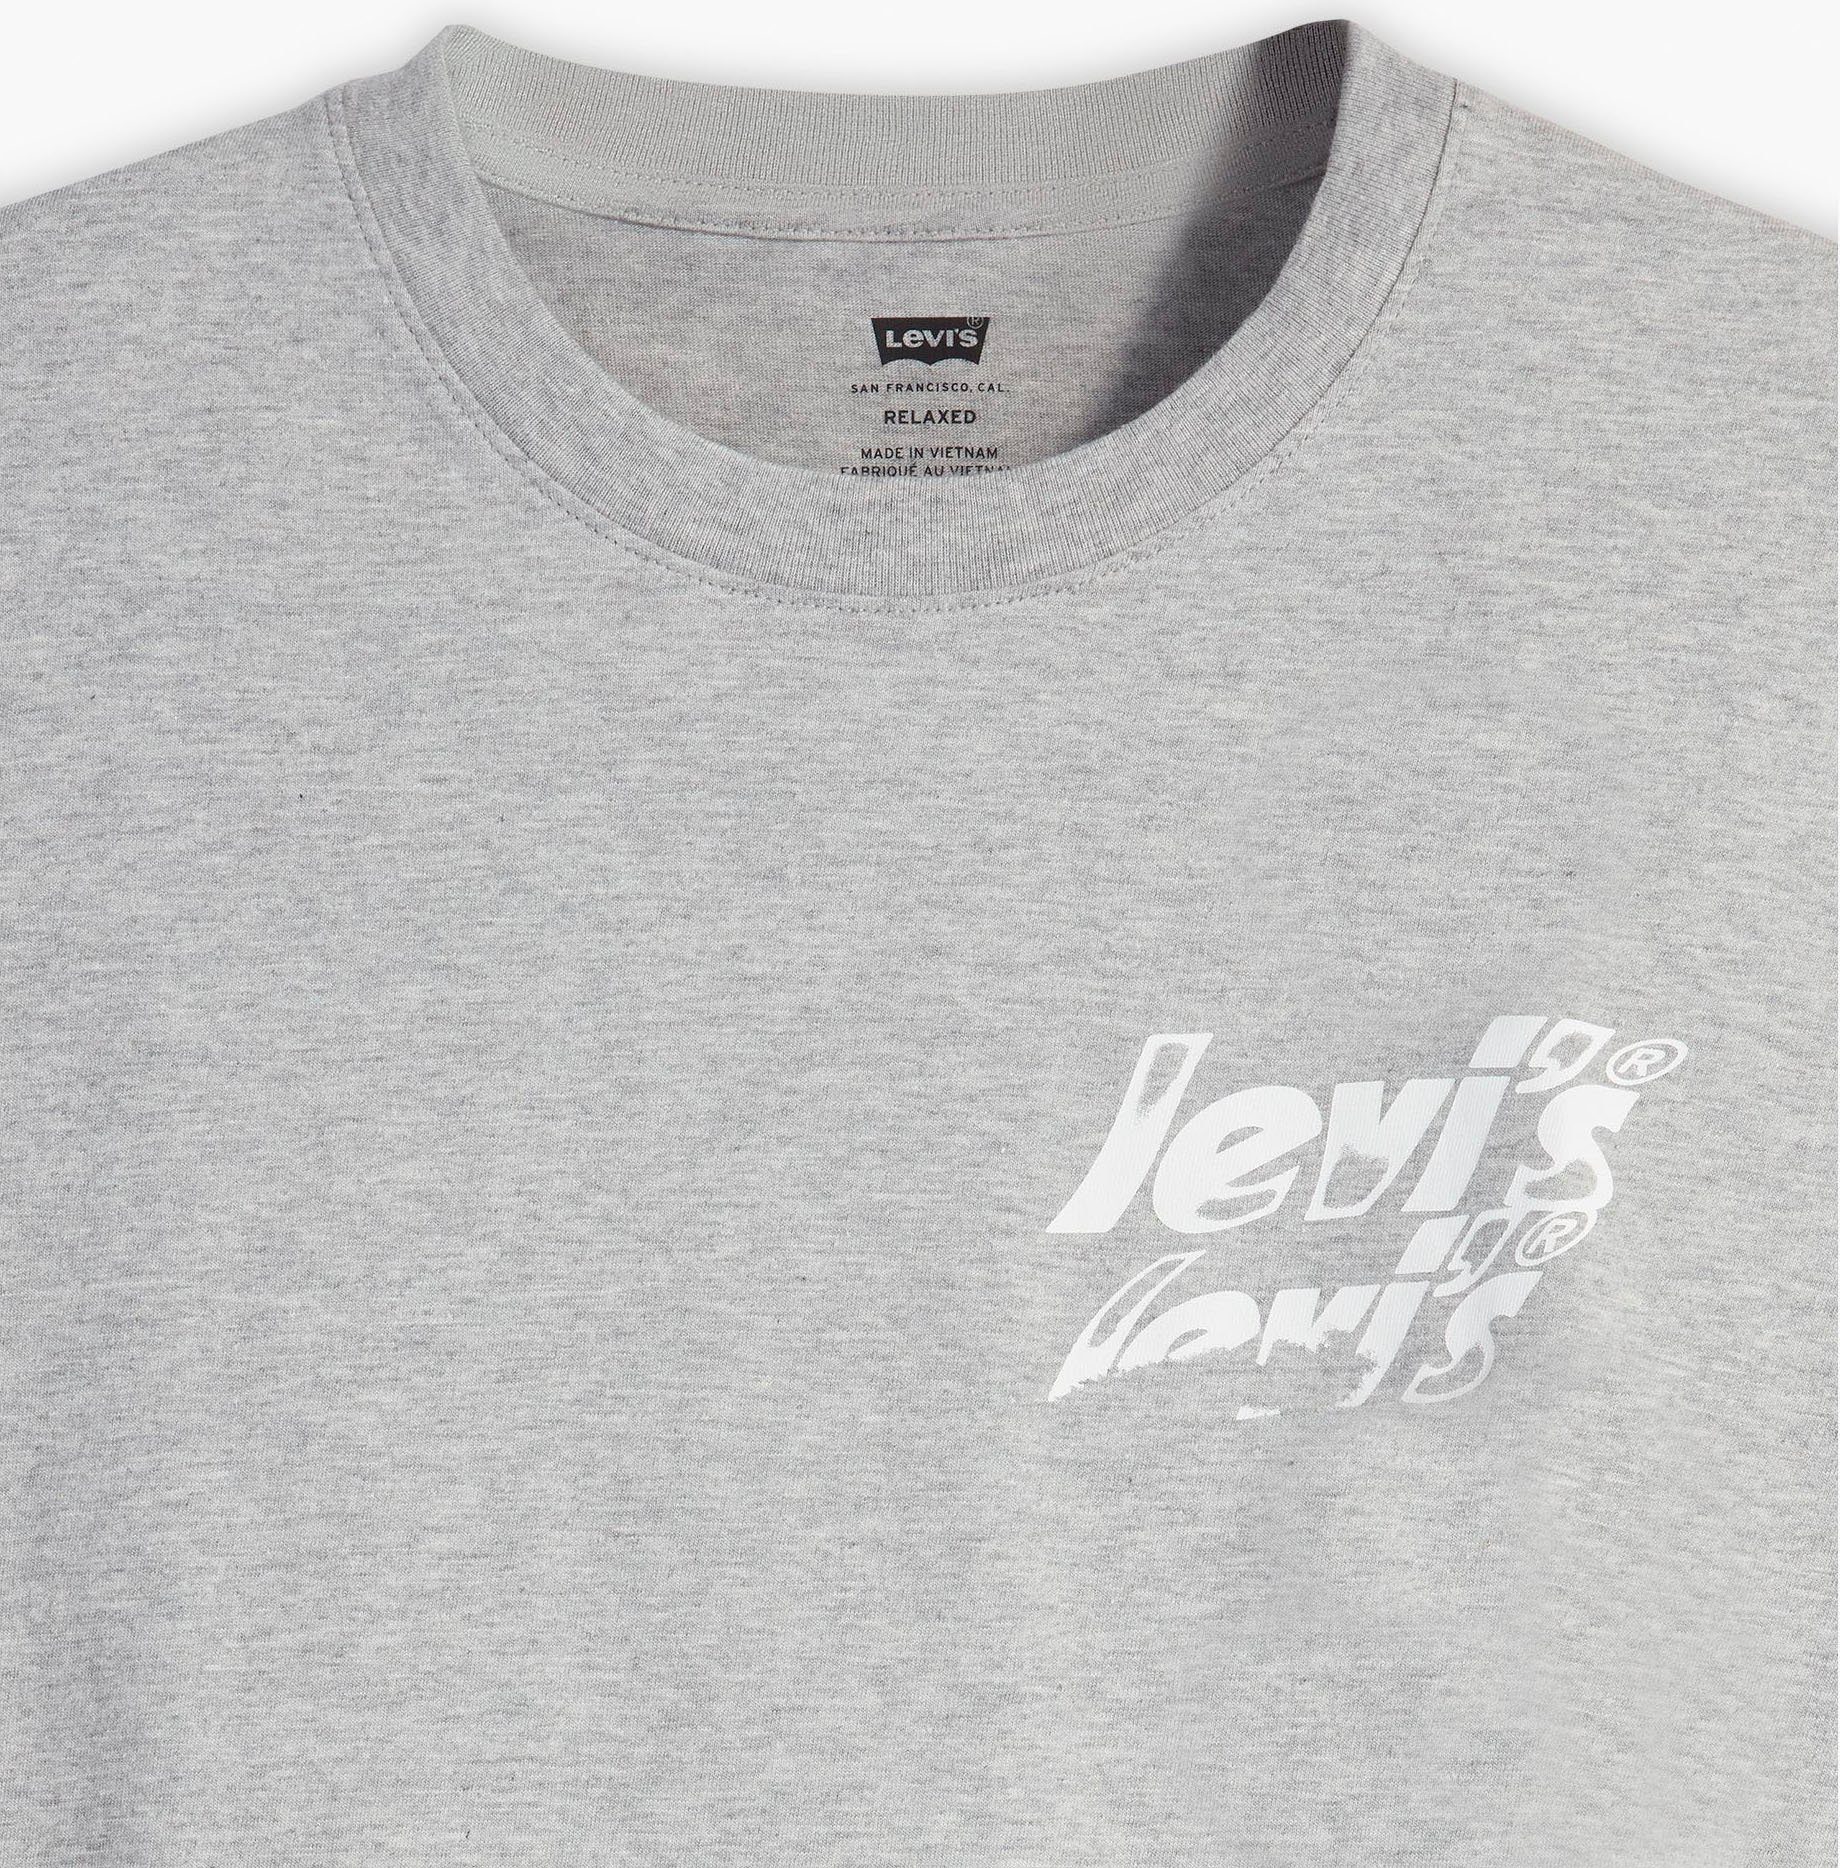 RELAXED T-Shirt grey TEE mit Levi's® Markenlogo-Aufdruck FIT